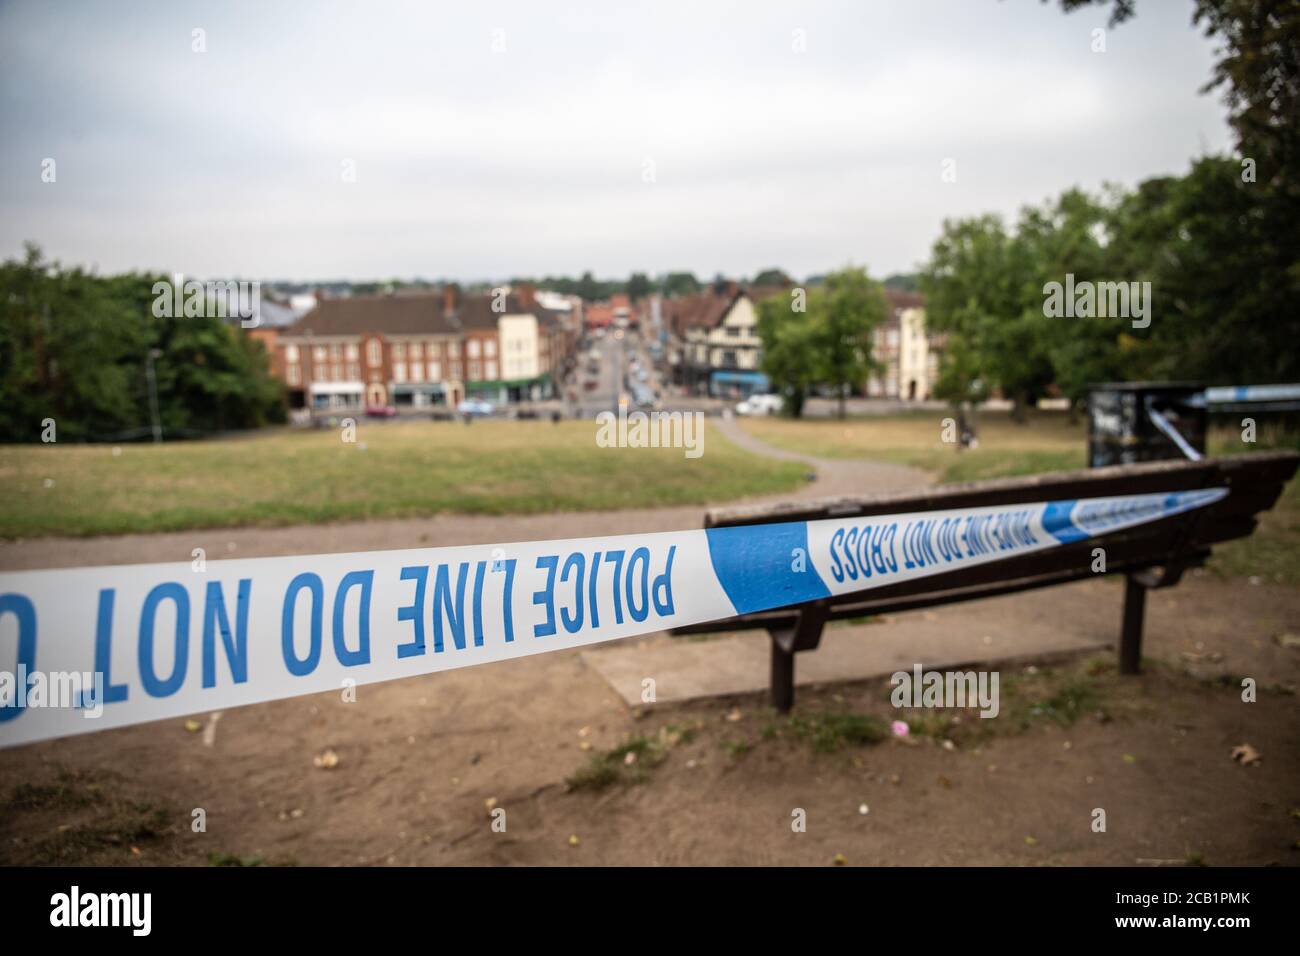 Police tape cordon at outdoor crime scene in UK Stock Photo